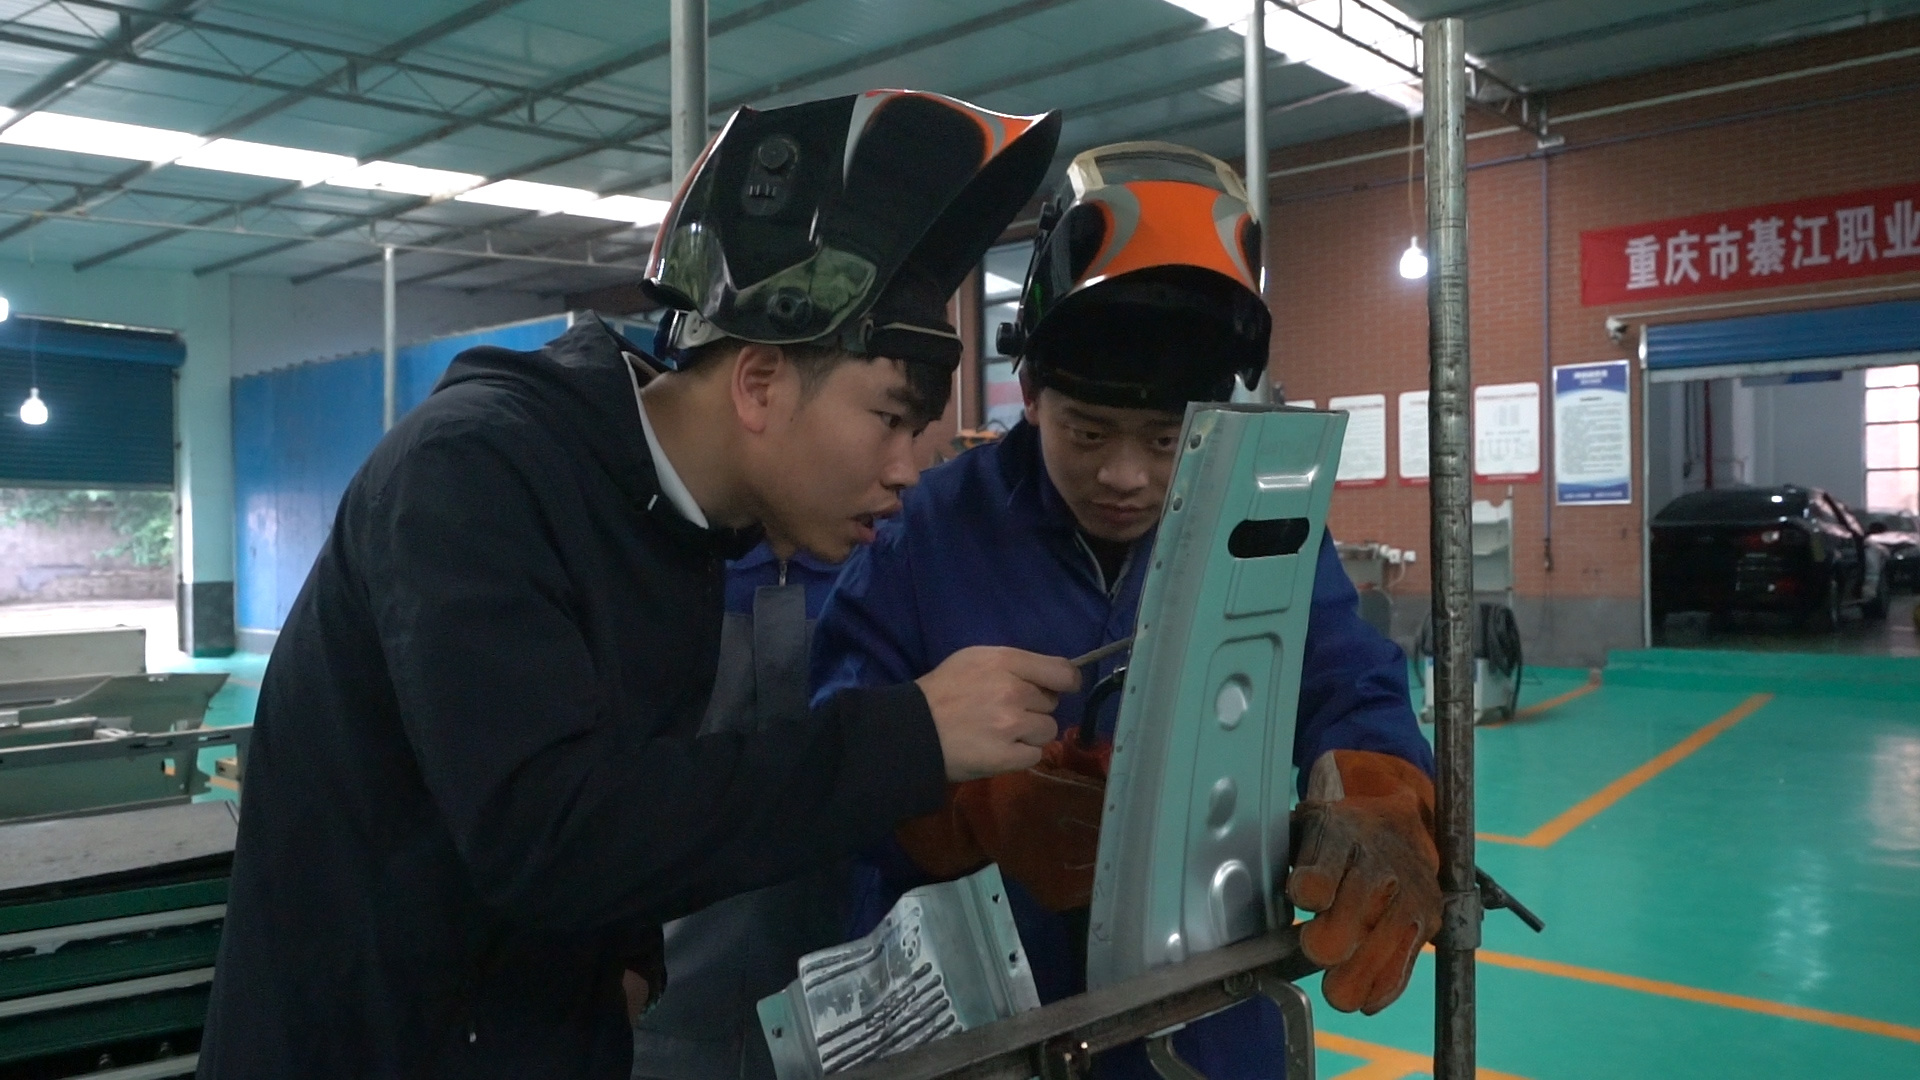 綦江区职教中心汽修教师周海涛正在对学生开展车身修复技术指导。谢天骄 摄